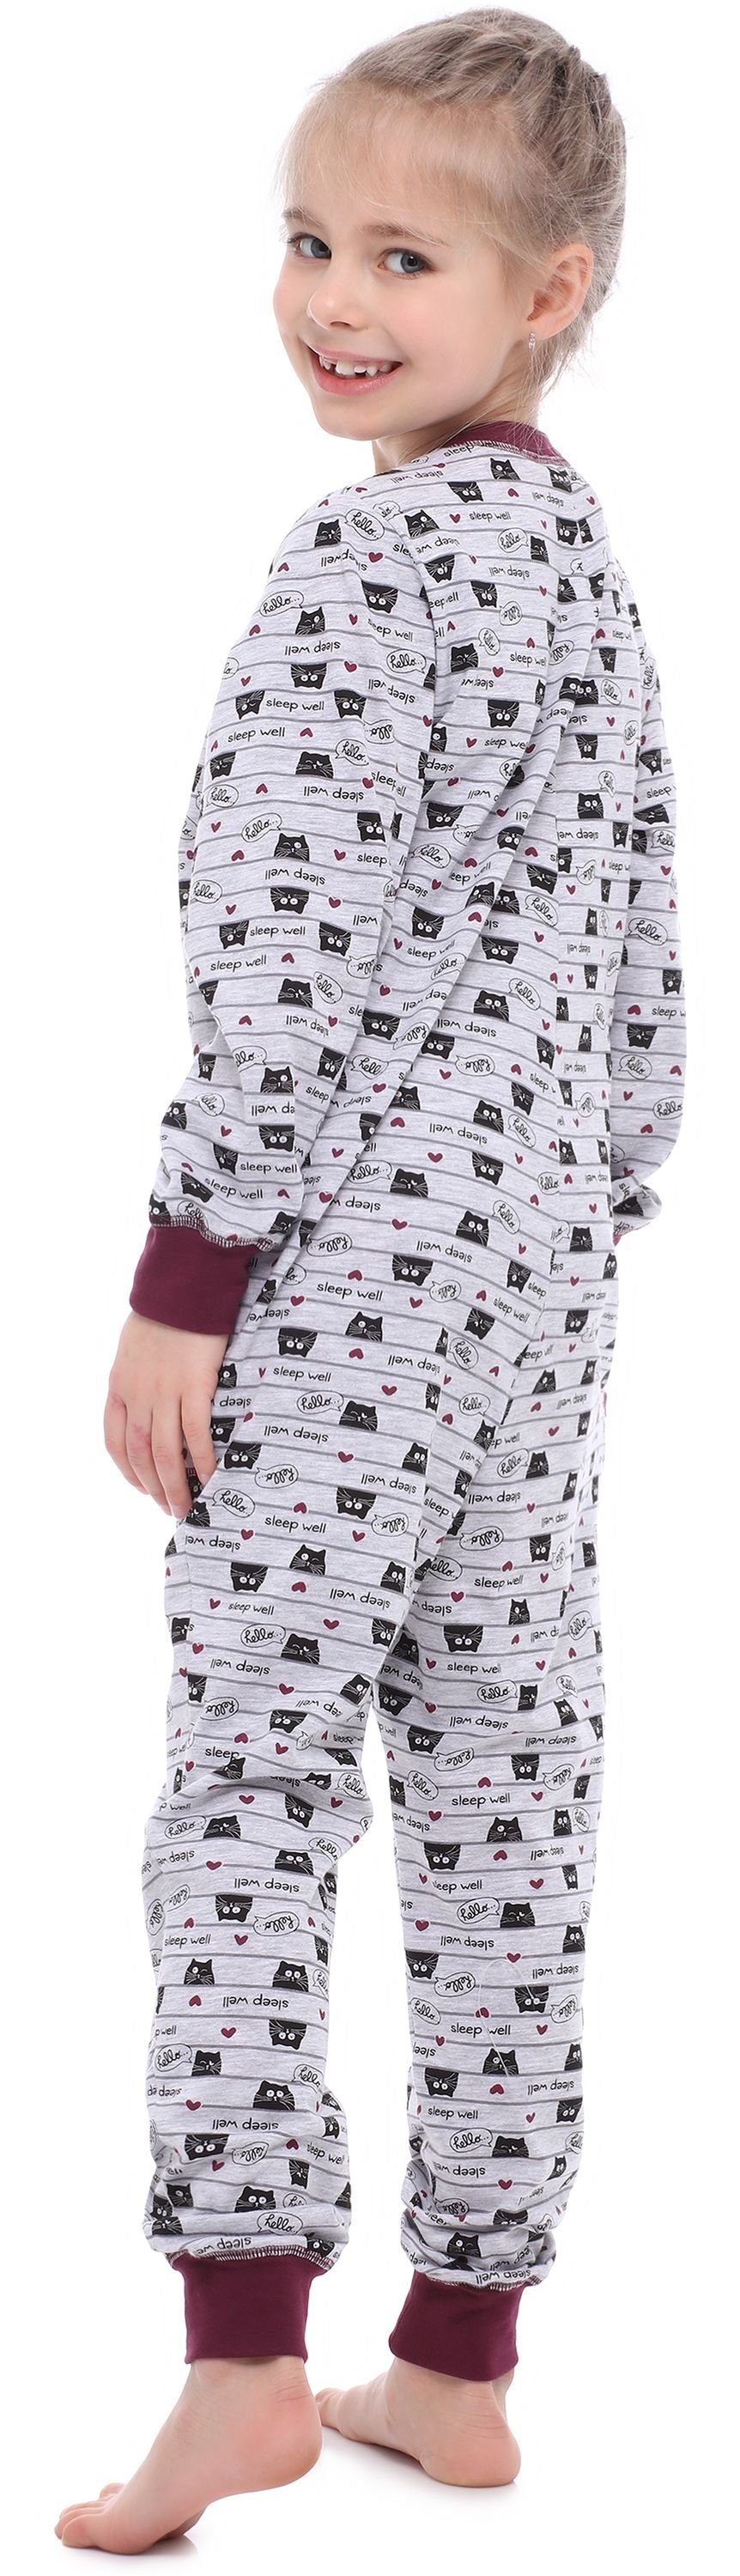 Style Katzen Melange MS10-186 Wein Schlafanzug Schlafanzug Jumpsuit Merry Mädchen